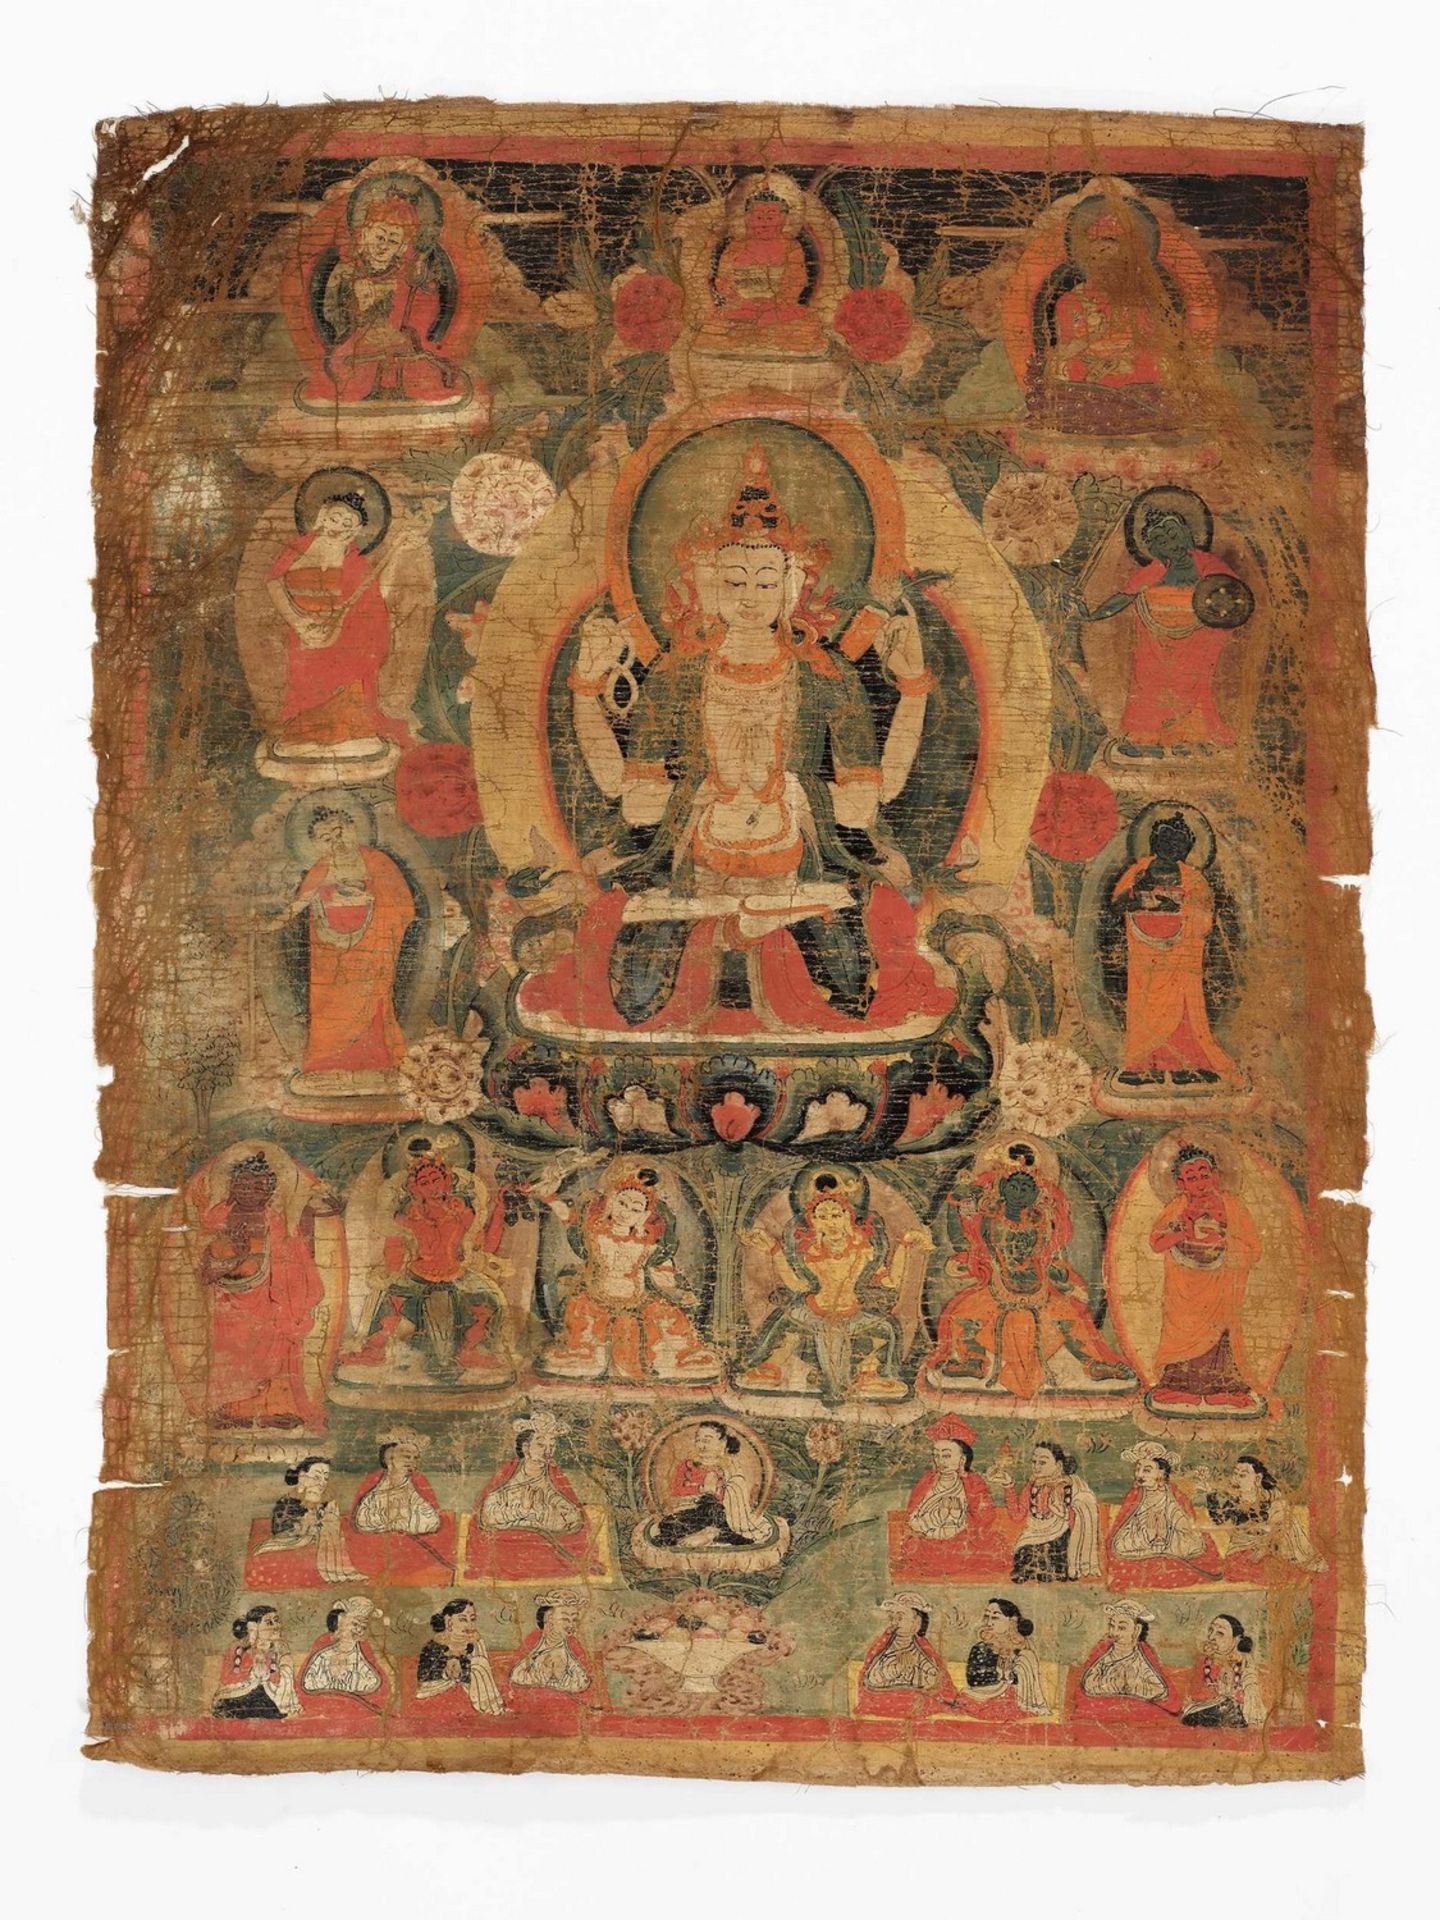 A TIBETAN THANGKA OF SHADAKSHARI LOKESHVARA, 17TH-18TH CENTURY